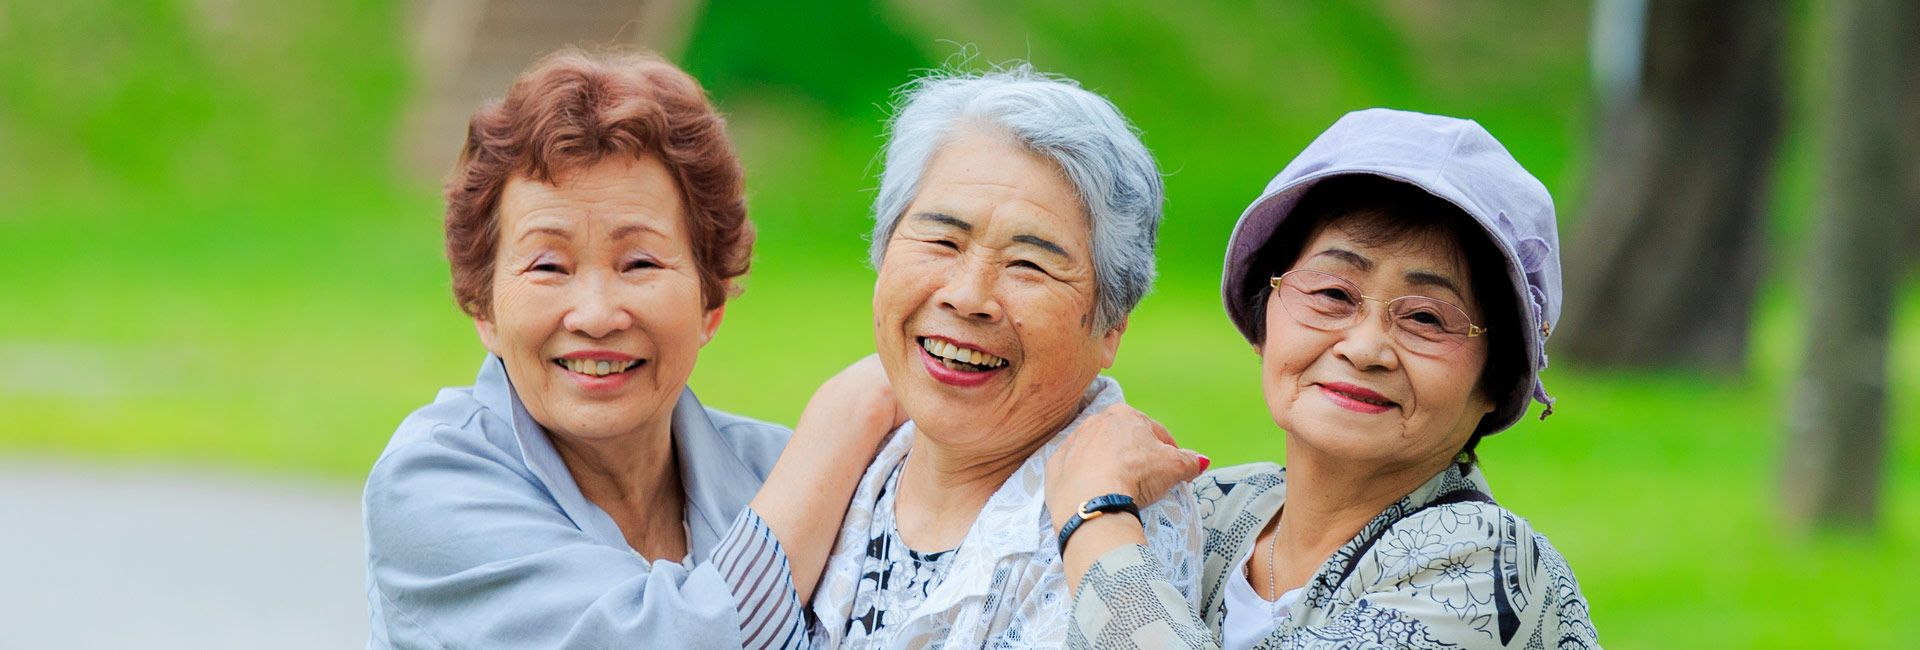 Three older women laughing